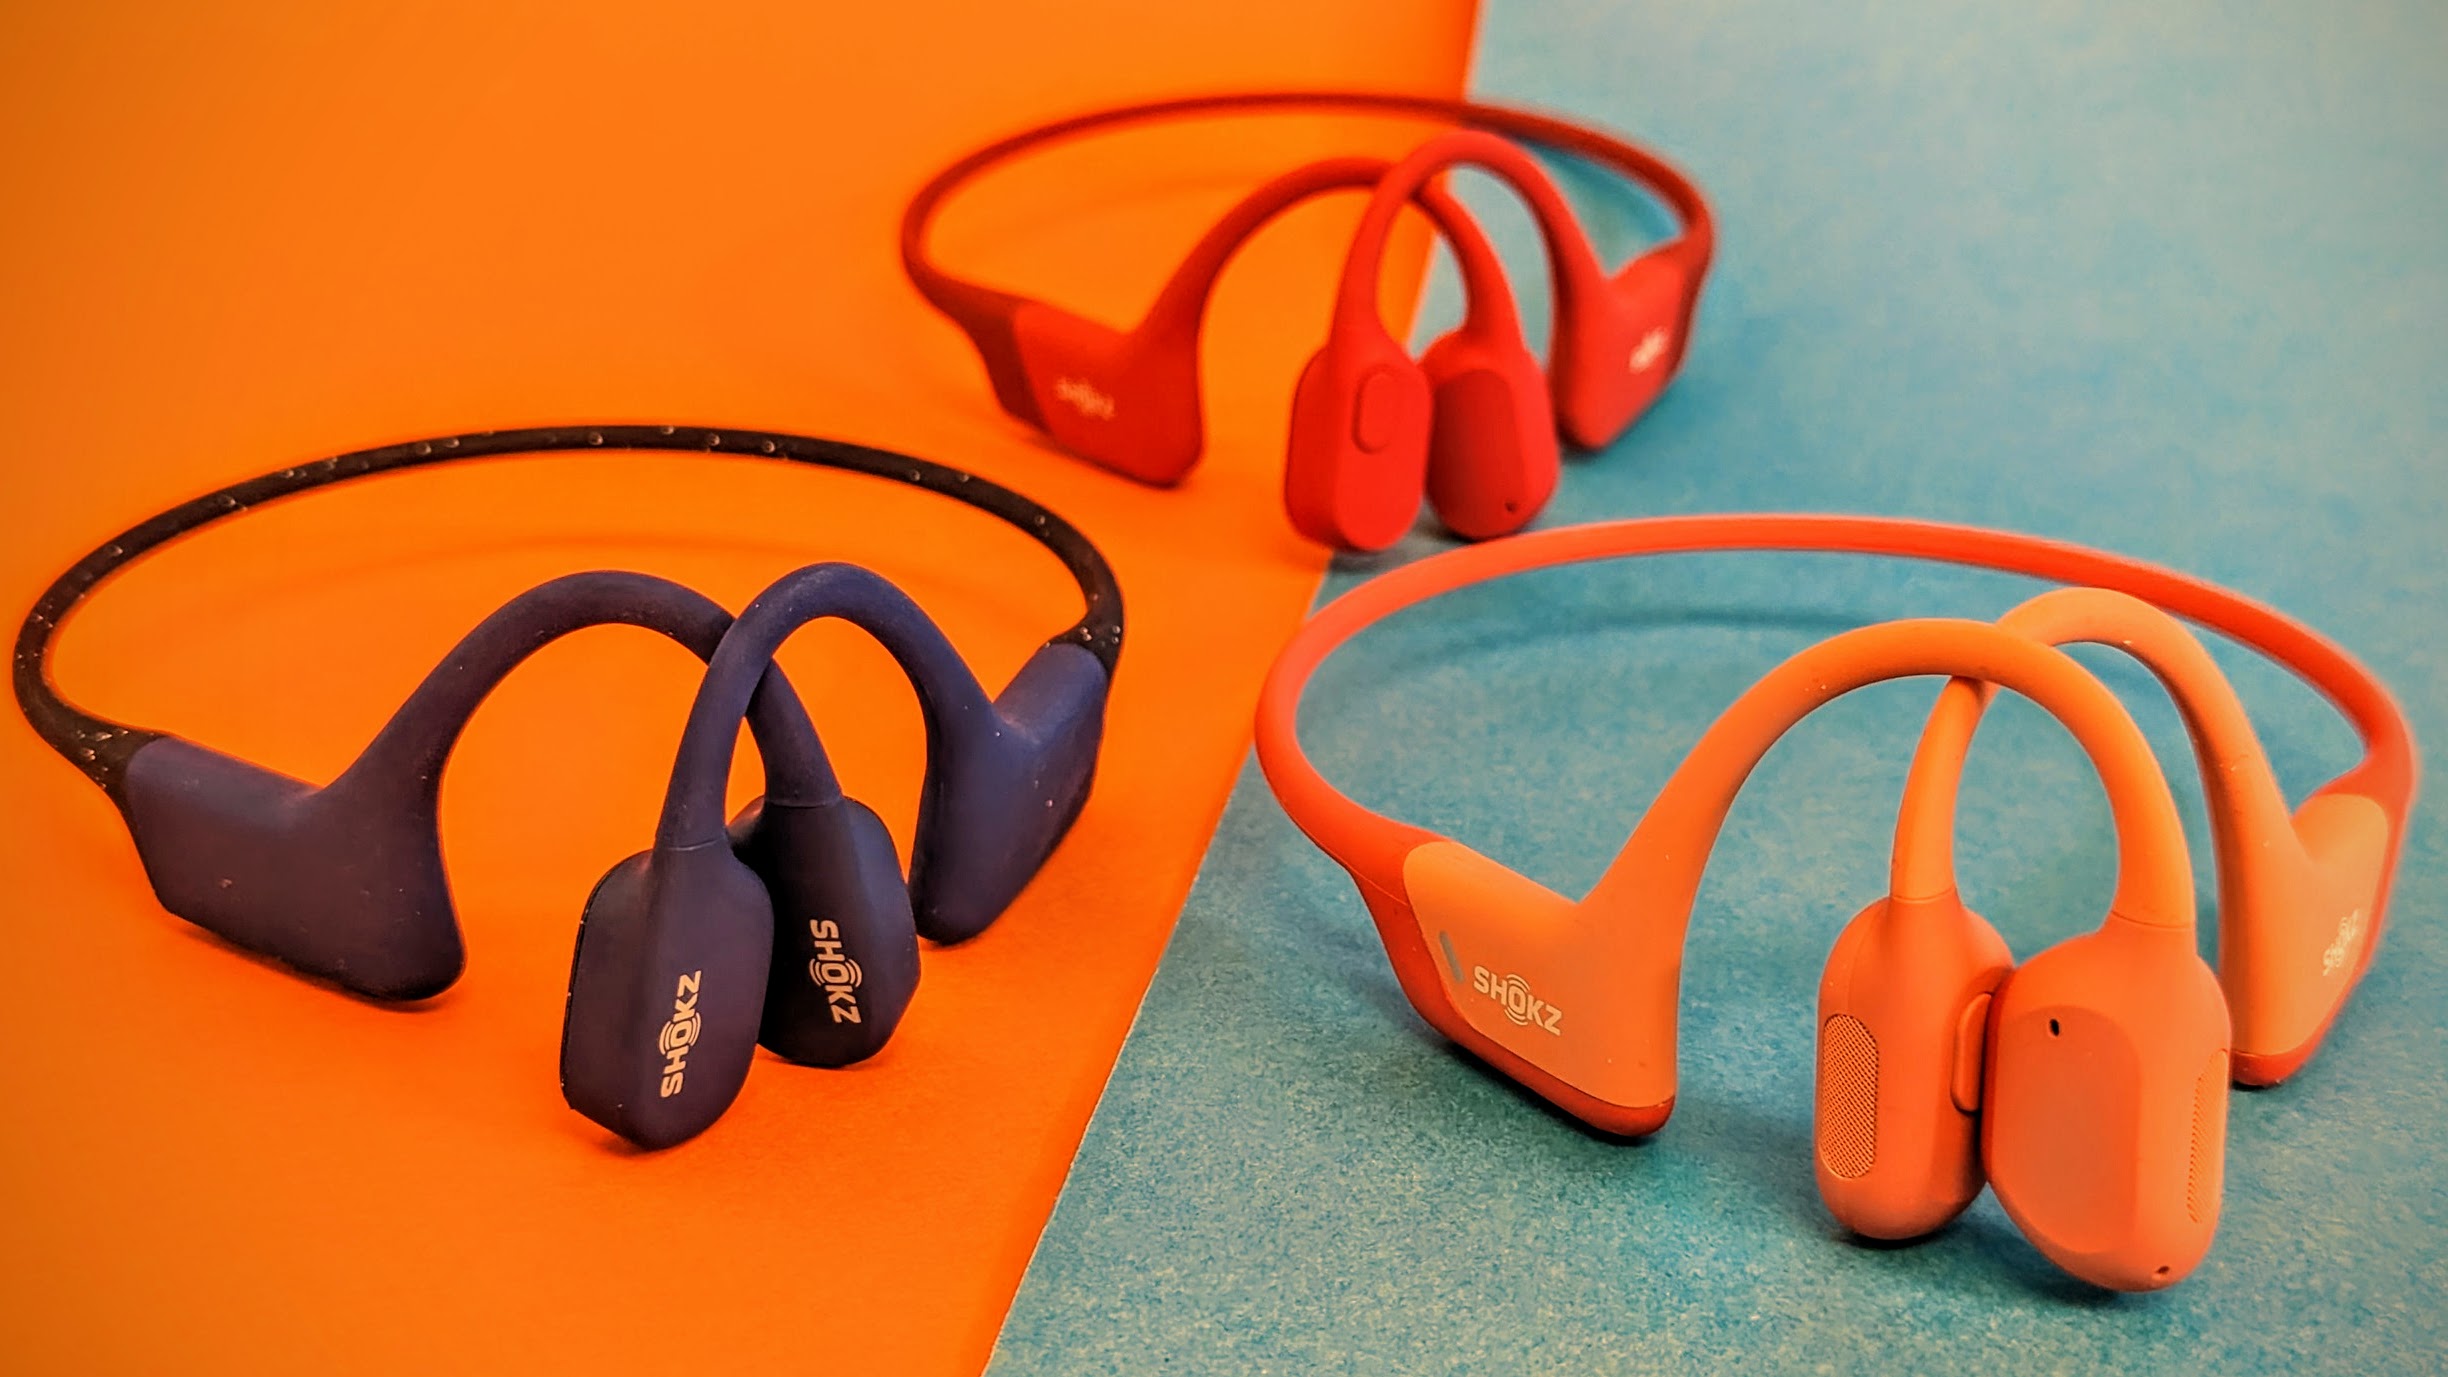 Knochenschall-Kopfhörer von Shokz im Test: Musikhören bei freien Ohren |  TechStage